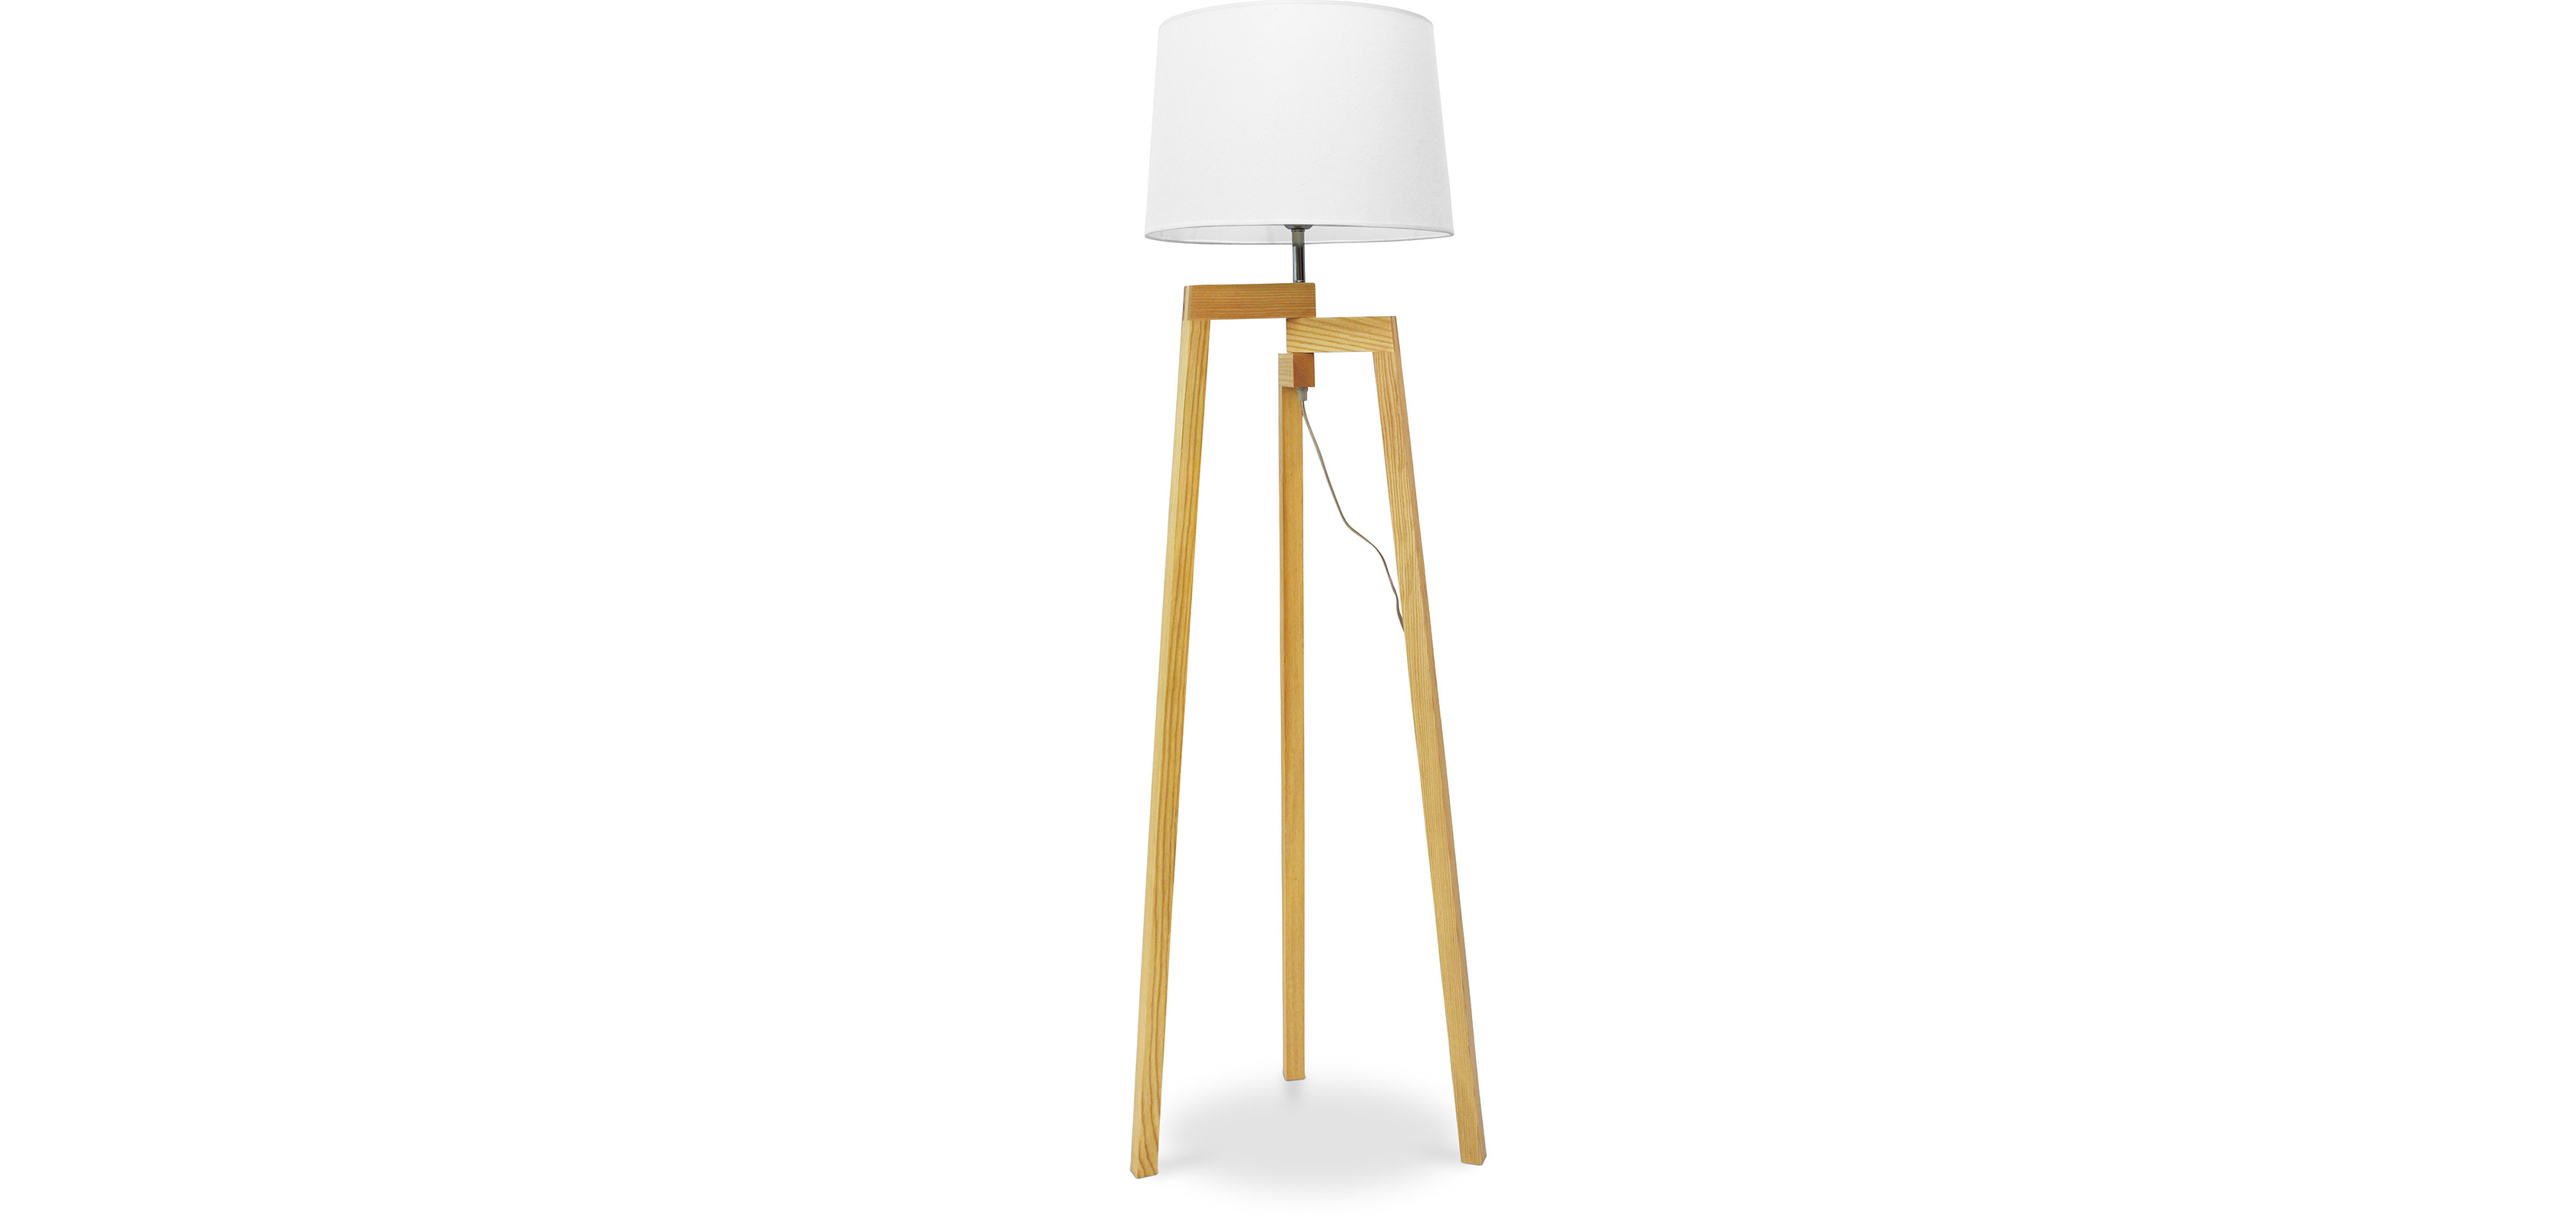 Dreibein Stehlampe - Wohnzimmerlampe skandinavischen Lon Design - im